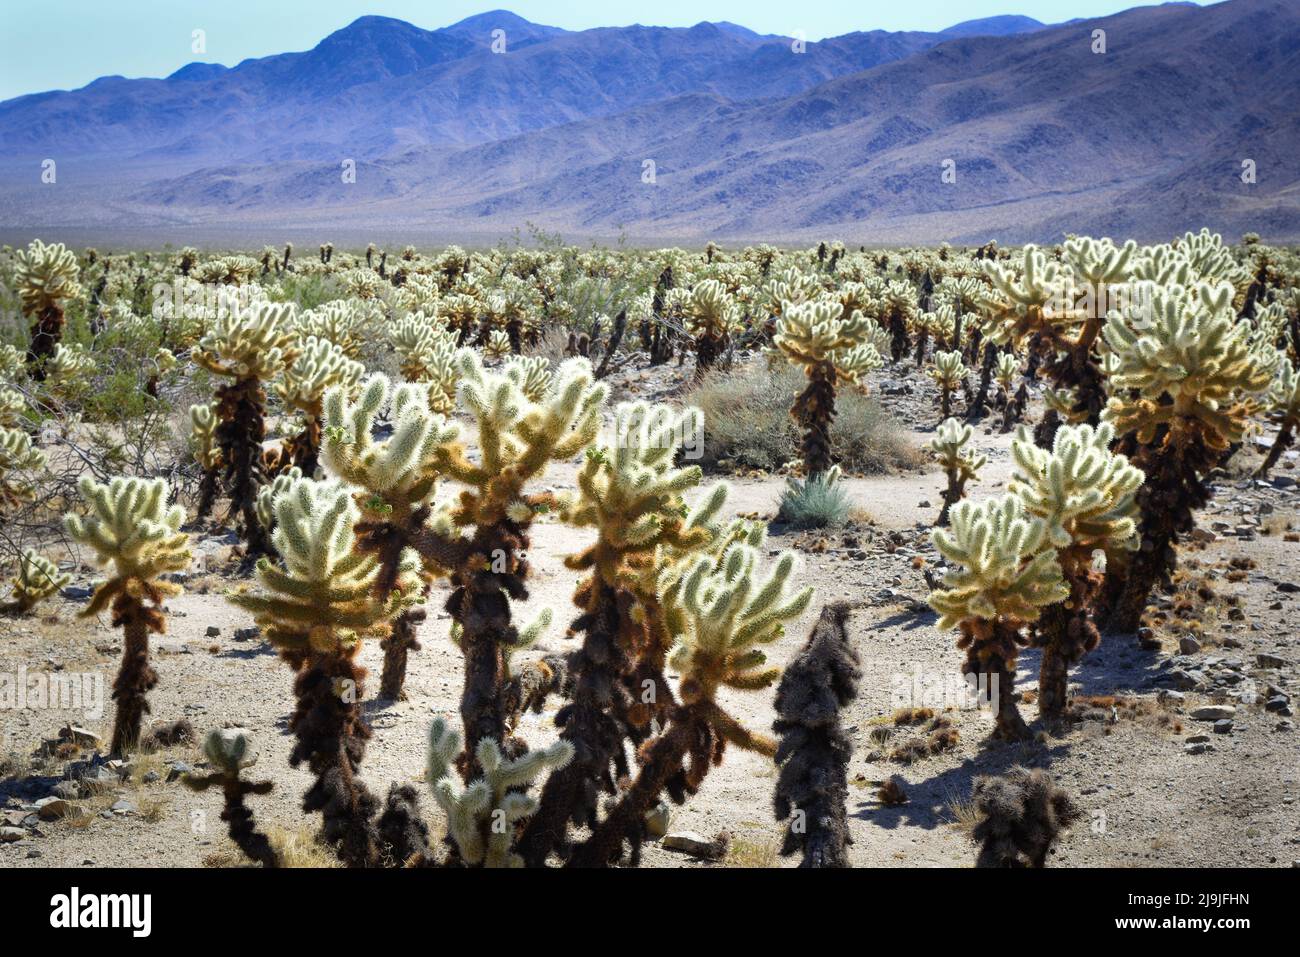 Le jardin unique de cactus de la Jolla, dans le parc national de Joshua Tree, dans le désert de Mojave, en Californie Banque D'Images